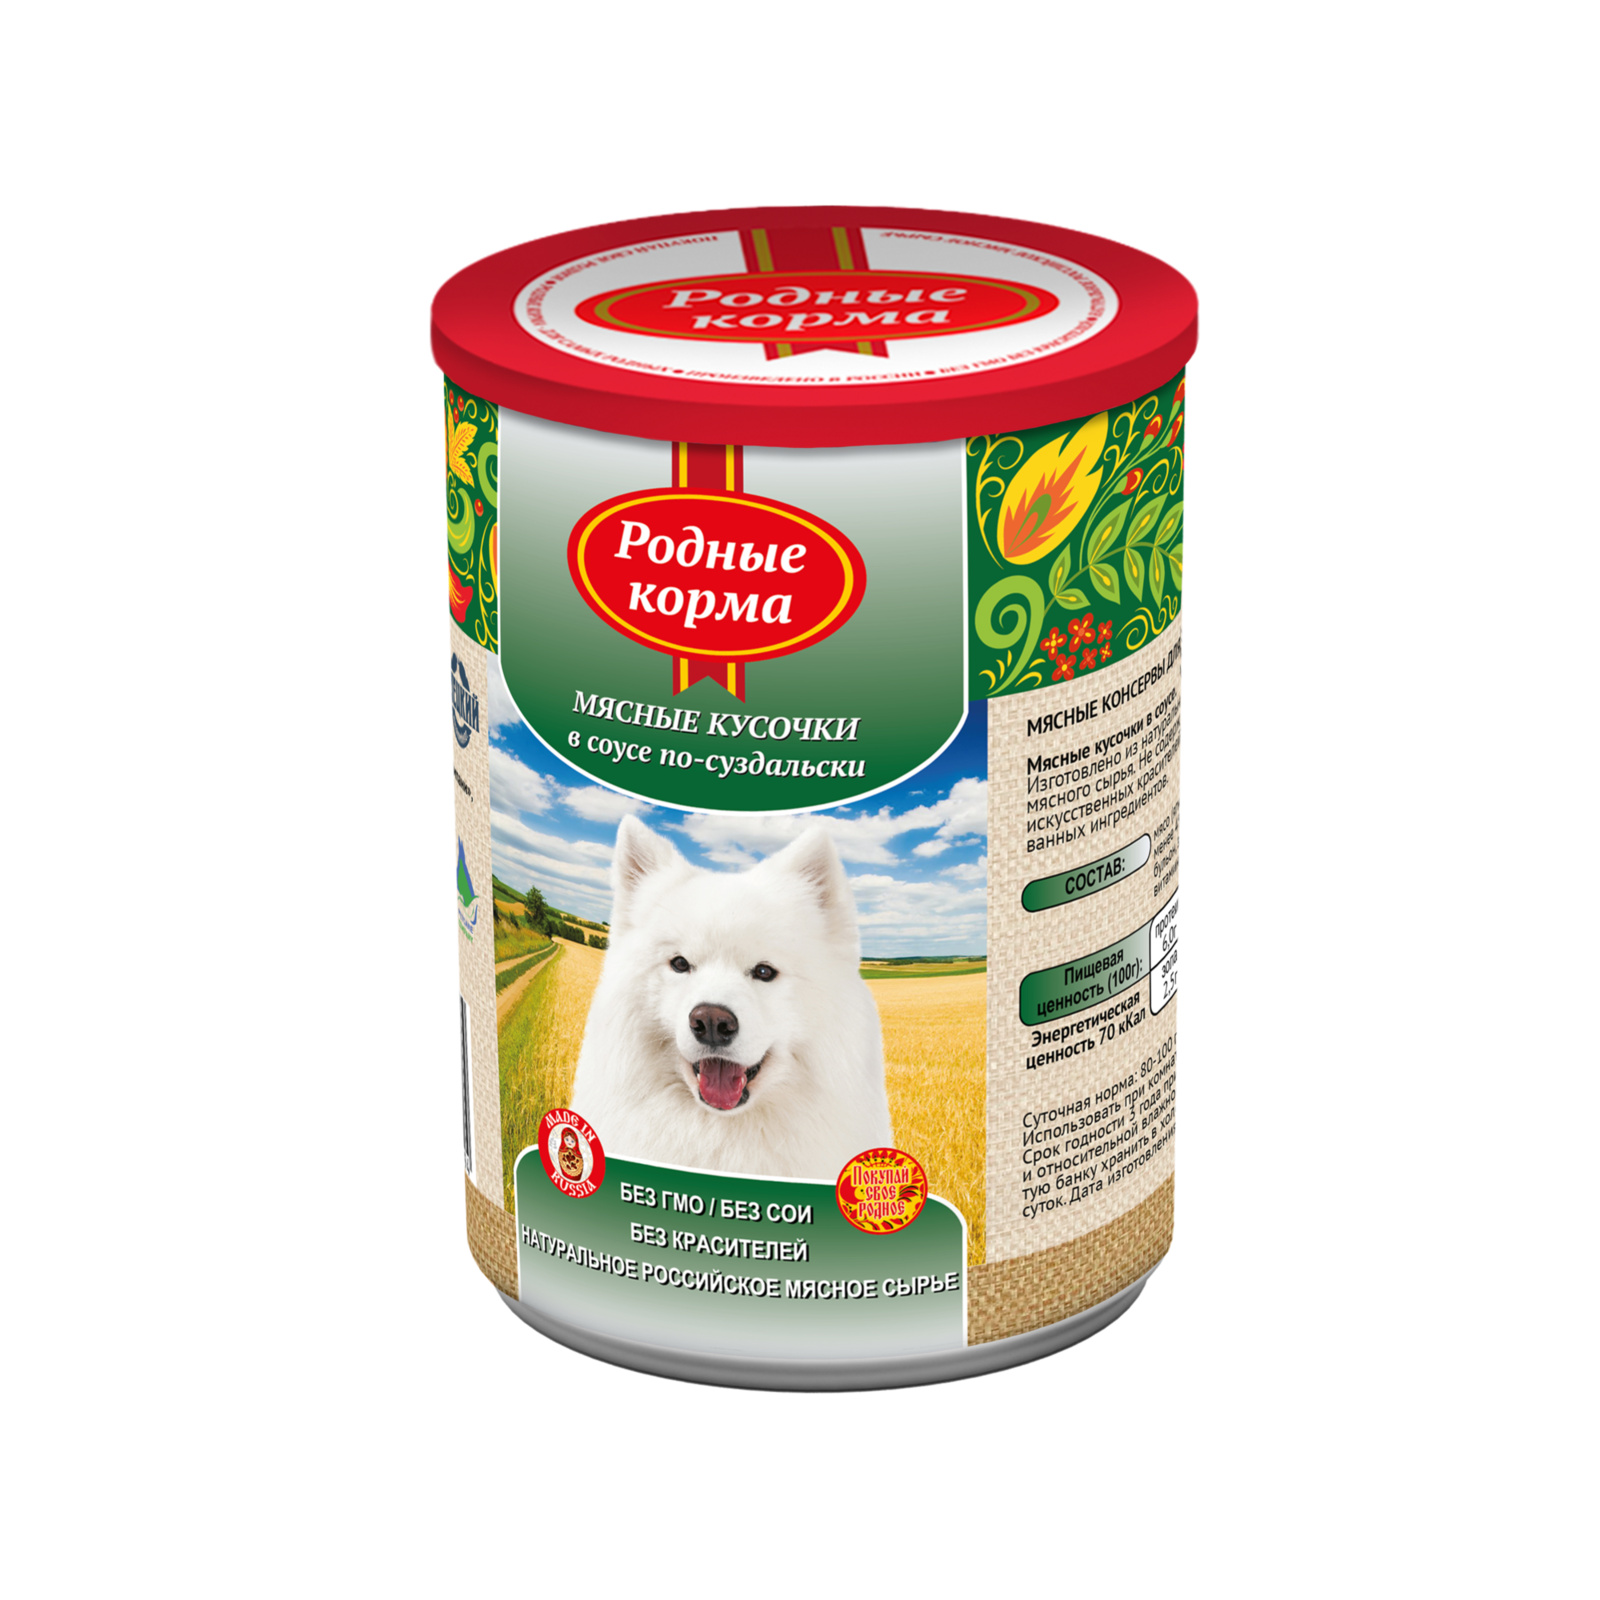 Родные корма консервы для собак мясные кусочки в соусе по-суздальски (970 г)